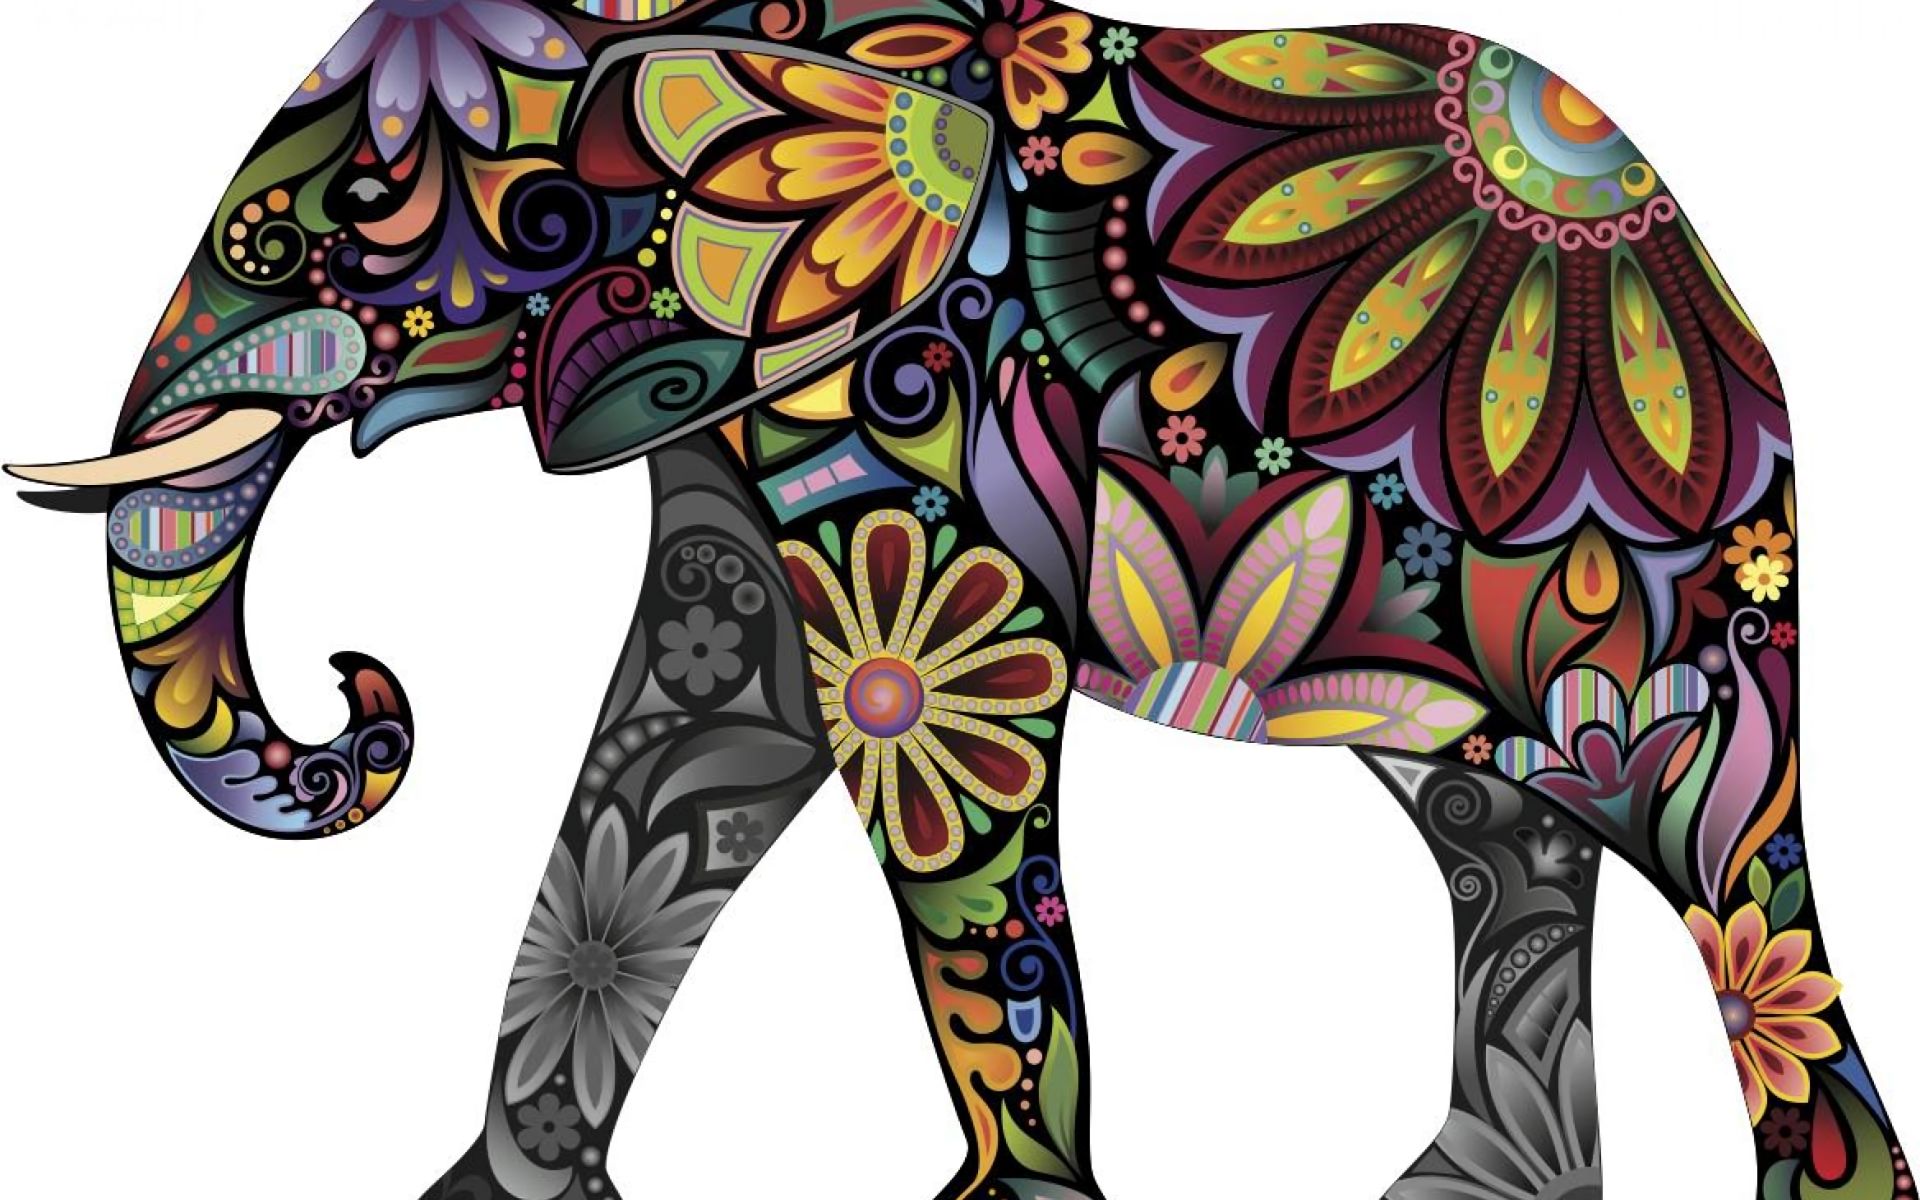 Скачать обои бесплатно Животные, Слоны, Цветок, Цвета, Красочный, Азиатский Слон картинка на рабочий стол ПК